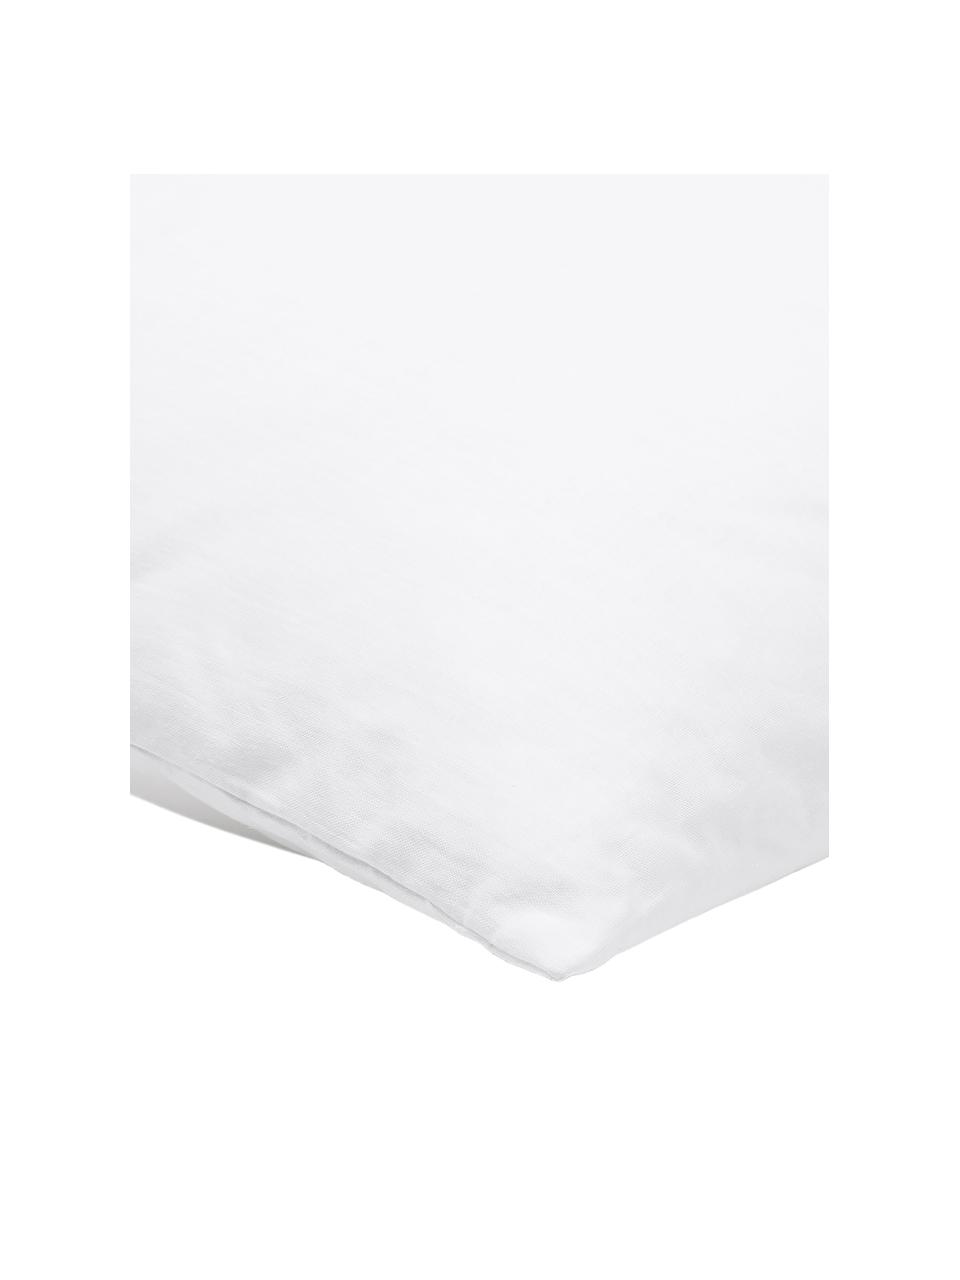 Kissen-Inlett Sia, 60x60, Microfaser-Füllung, Hülle: 100% Baumwolle, Weiß, B 60 x L 60 cm